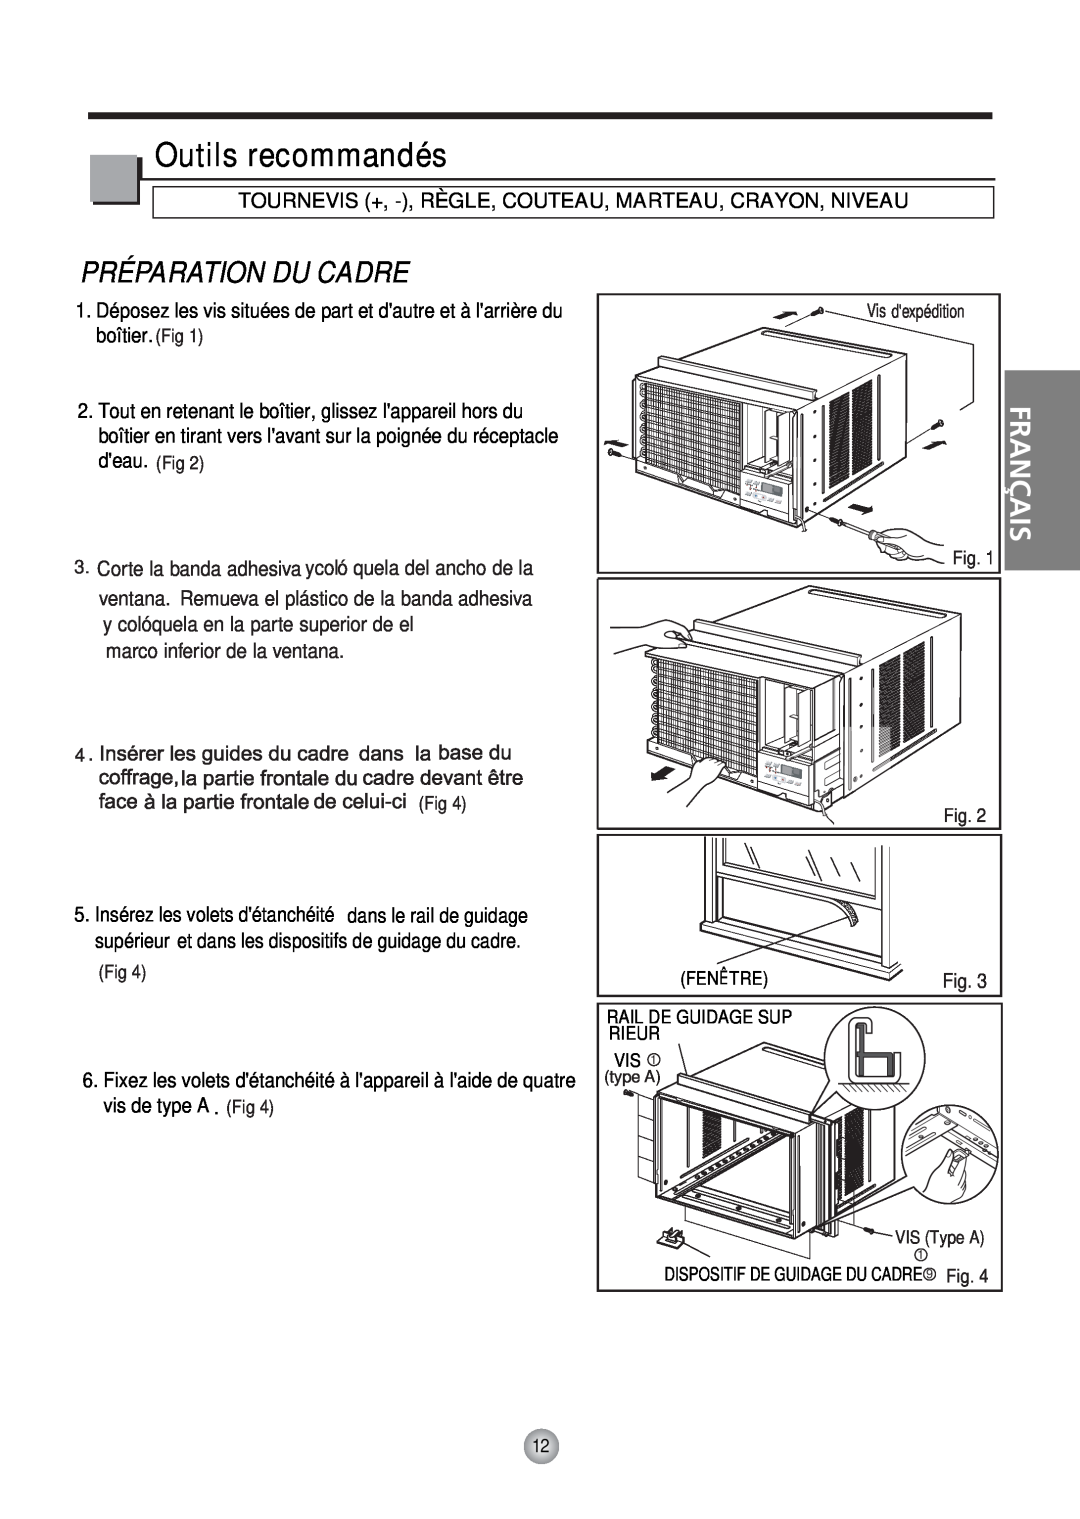 Friedrich CP10, CP12 manual Outils recommandés, Préparation Du Cadre, Français 